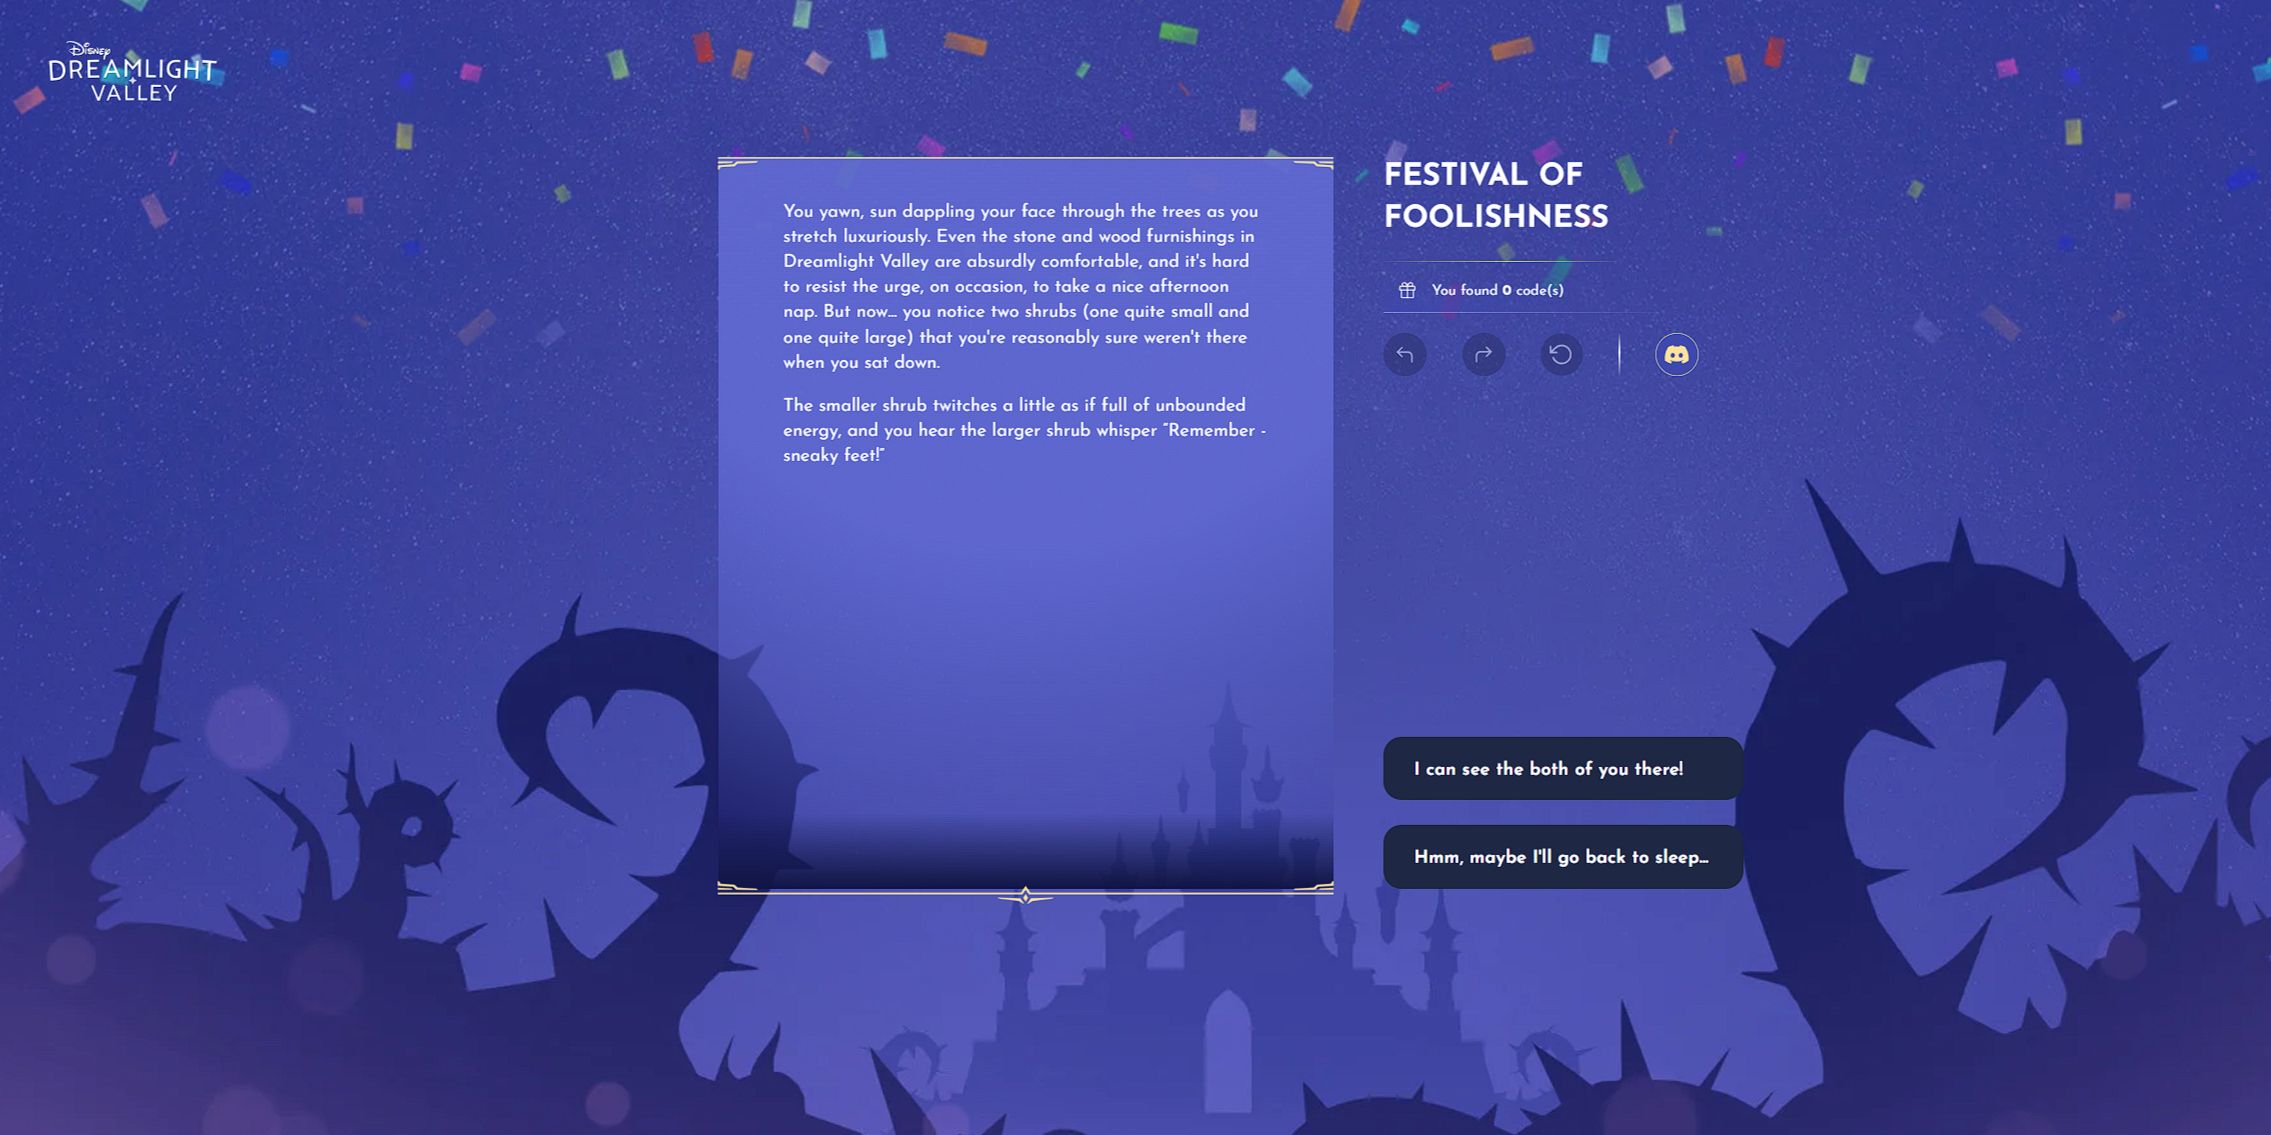 A primeira página da aventura do Festival of Foolishness no Disney Dreamlight Valley